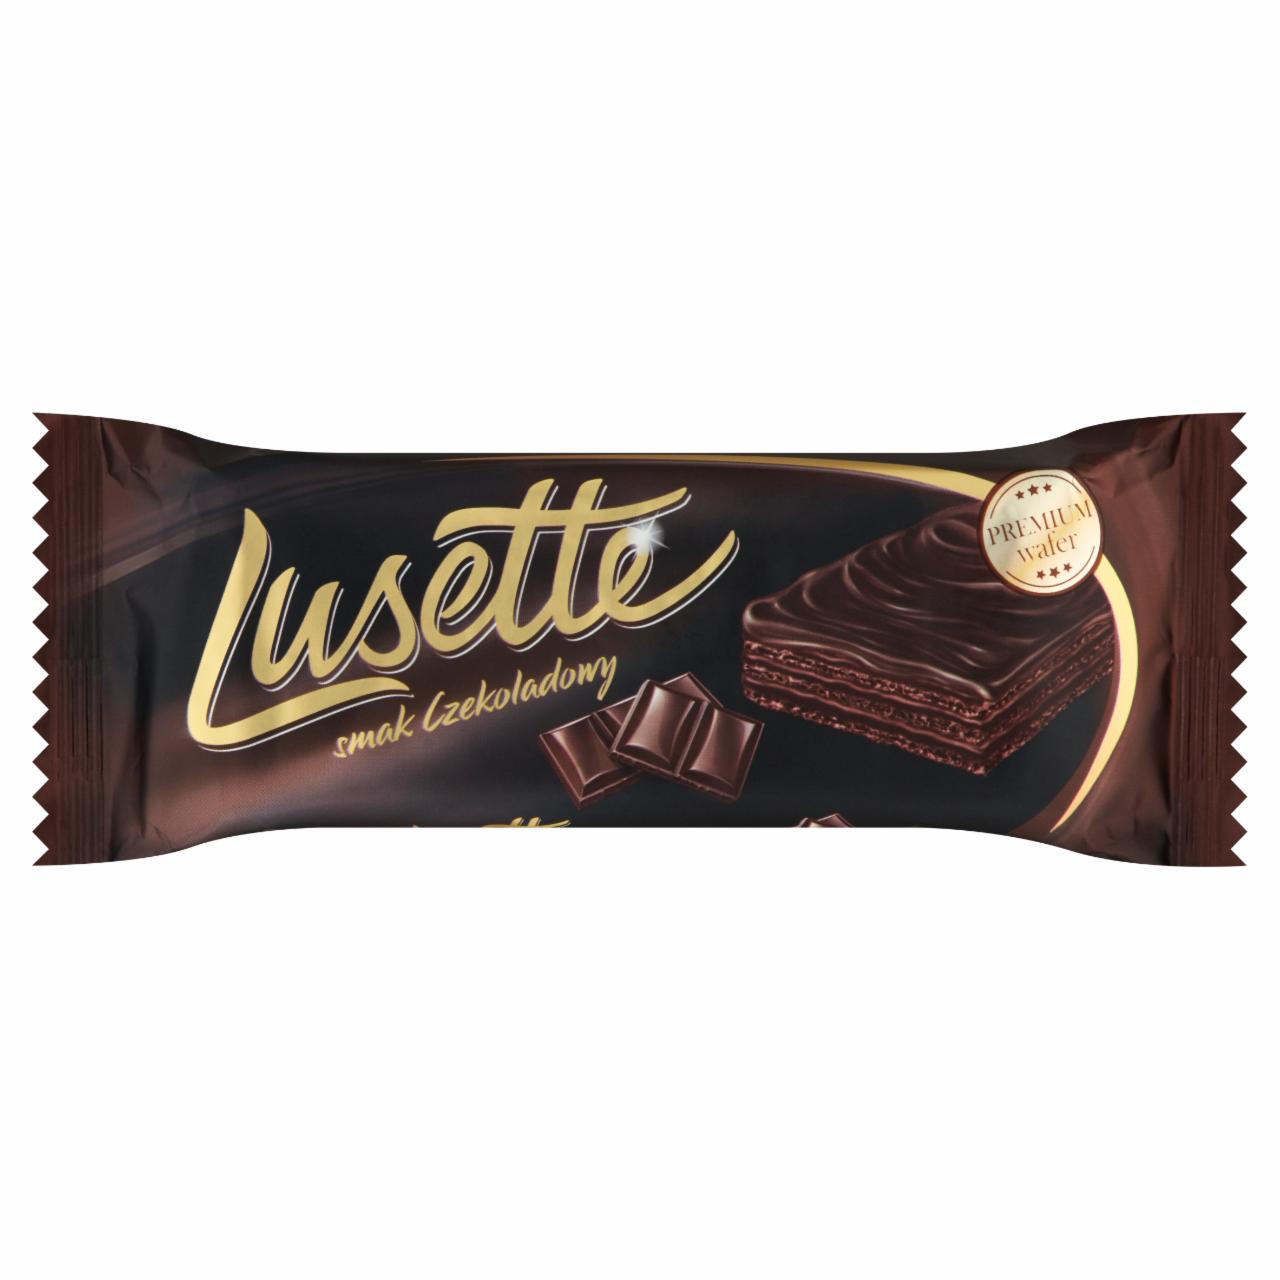 Képek - Lusette kakaós-csokoládés krémmel töltött kakaós ostyaszelet kakaós bevonatban 50 g